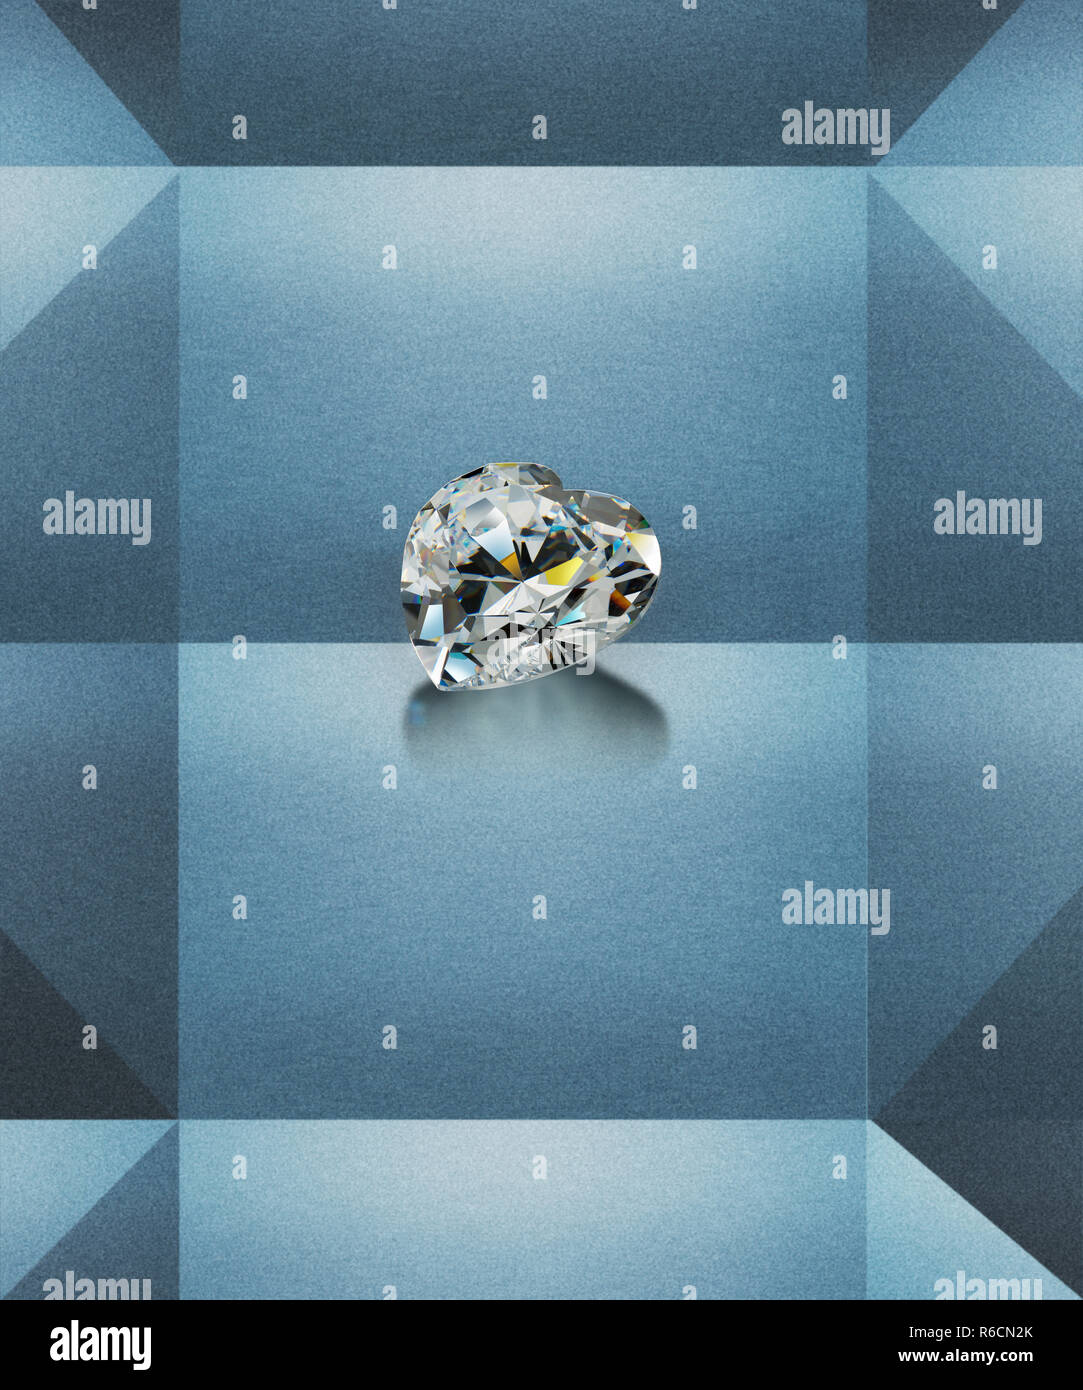 Immagine digitale del prezioso anello di diamante con un background geometrica Foto Stock